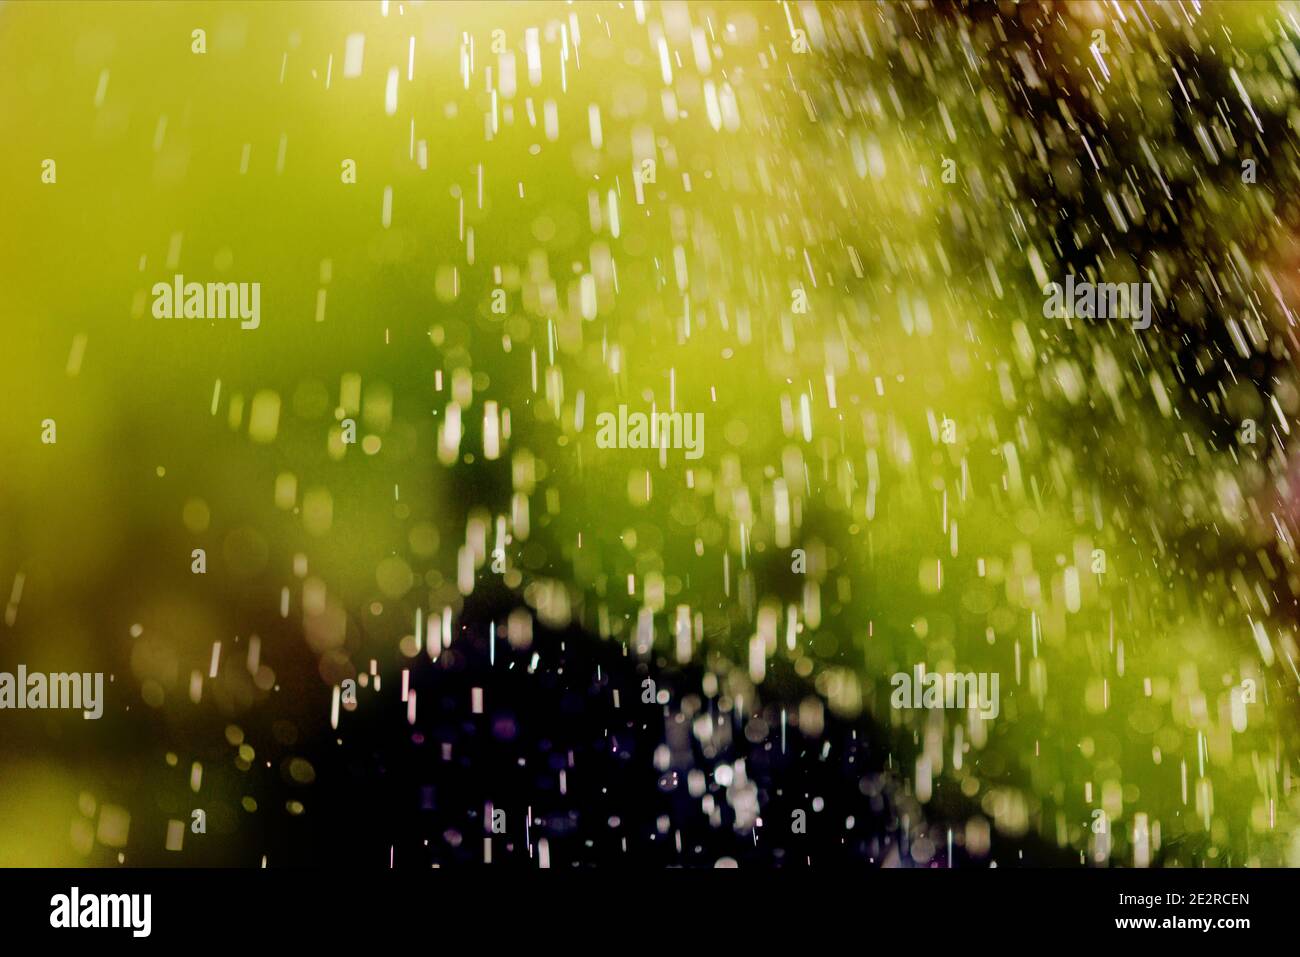 Kunst, abstrakter Frühlingshintergrund. Grüner Unschärfe Bokeh Hintergrund. Tropfen Tau oder Regen. Design Element.Tropfen fliegenden regen.Isolate auf schwarz. Stockfoto